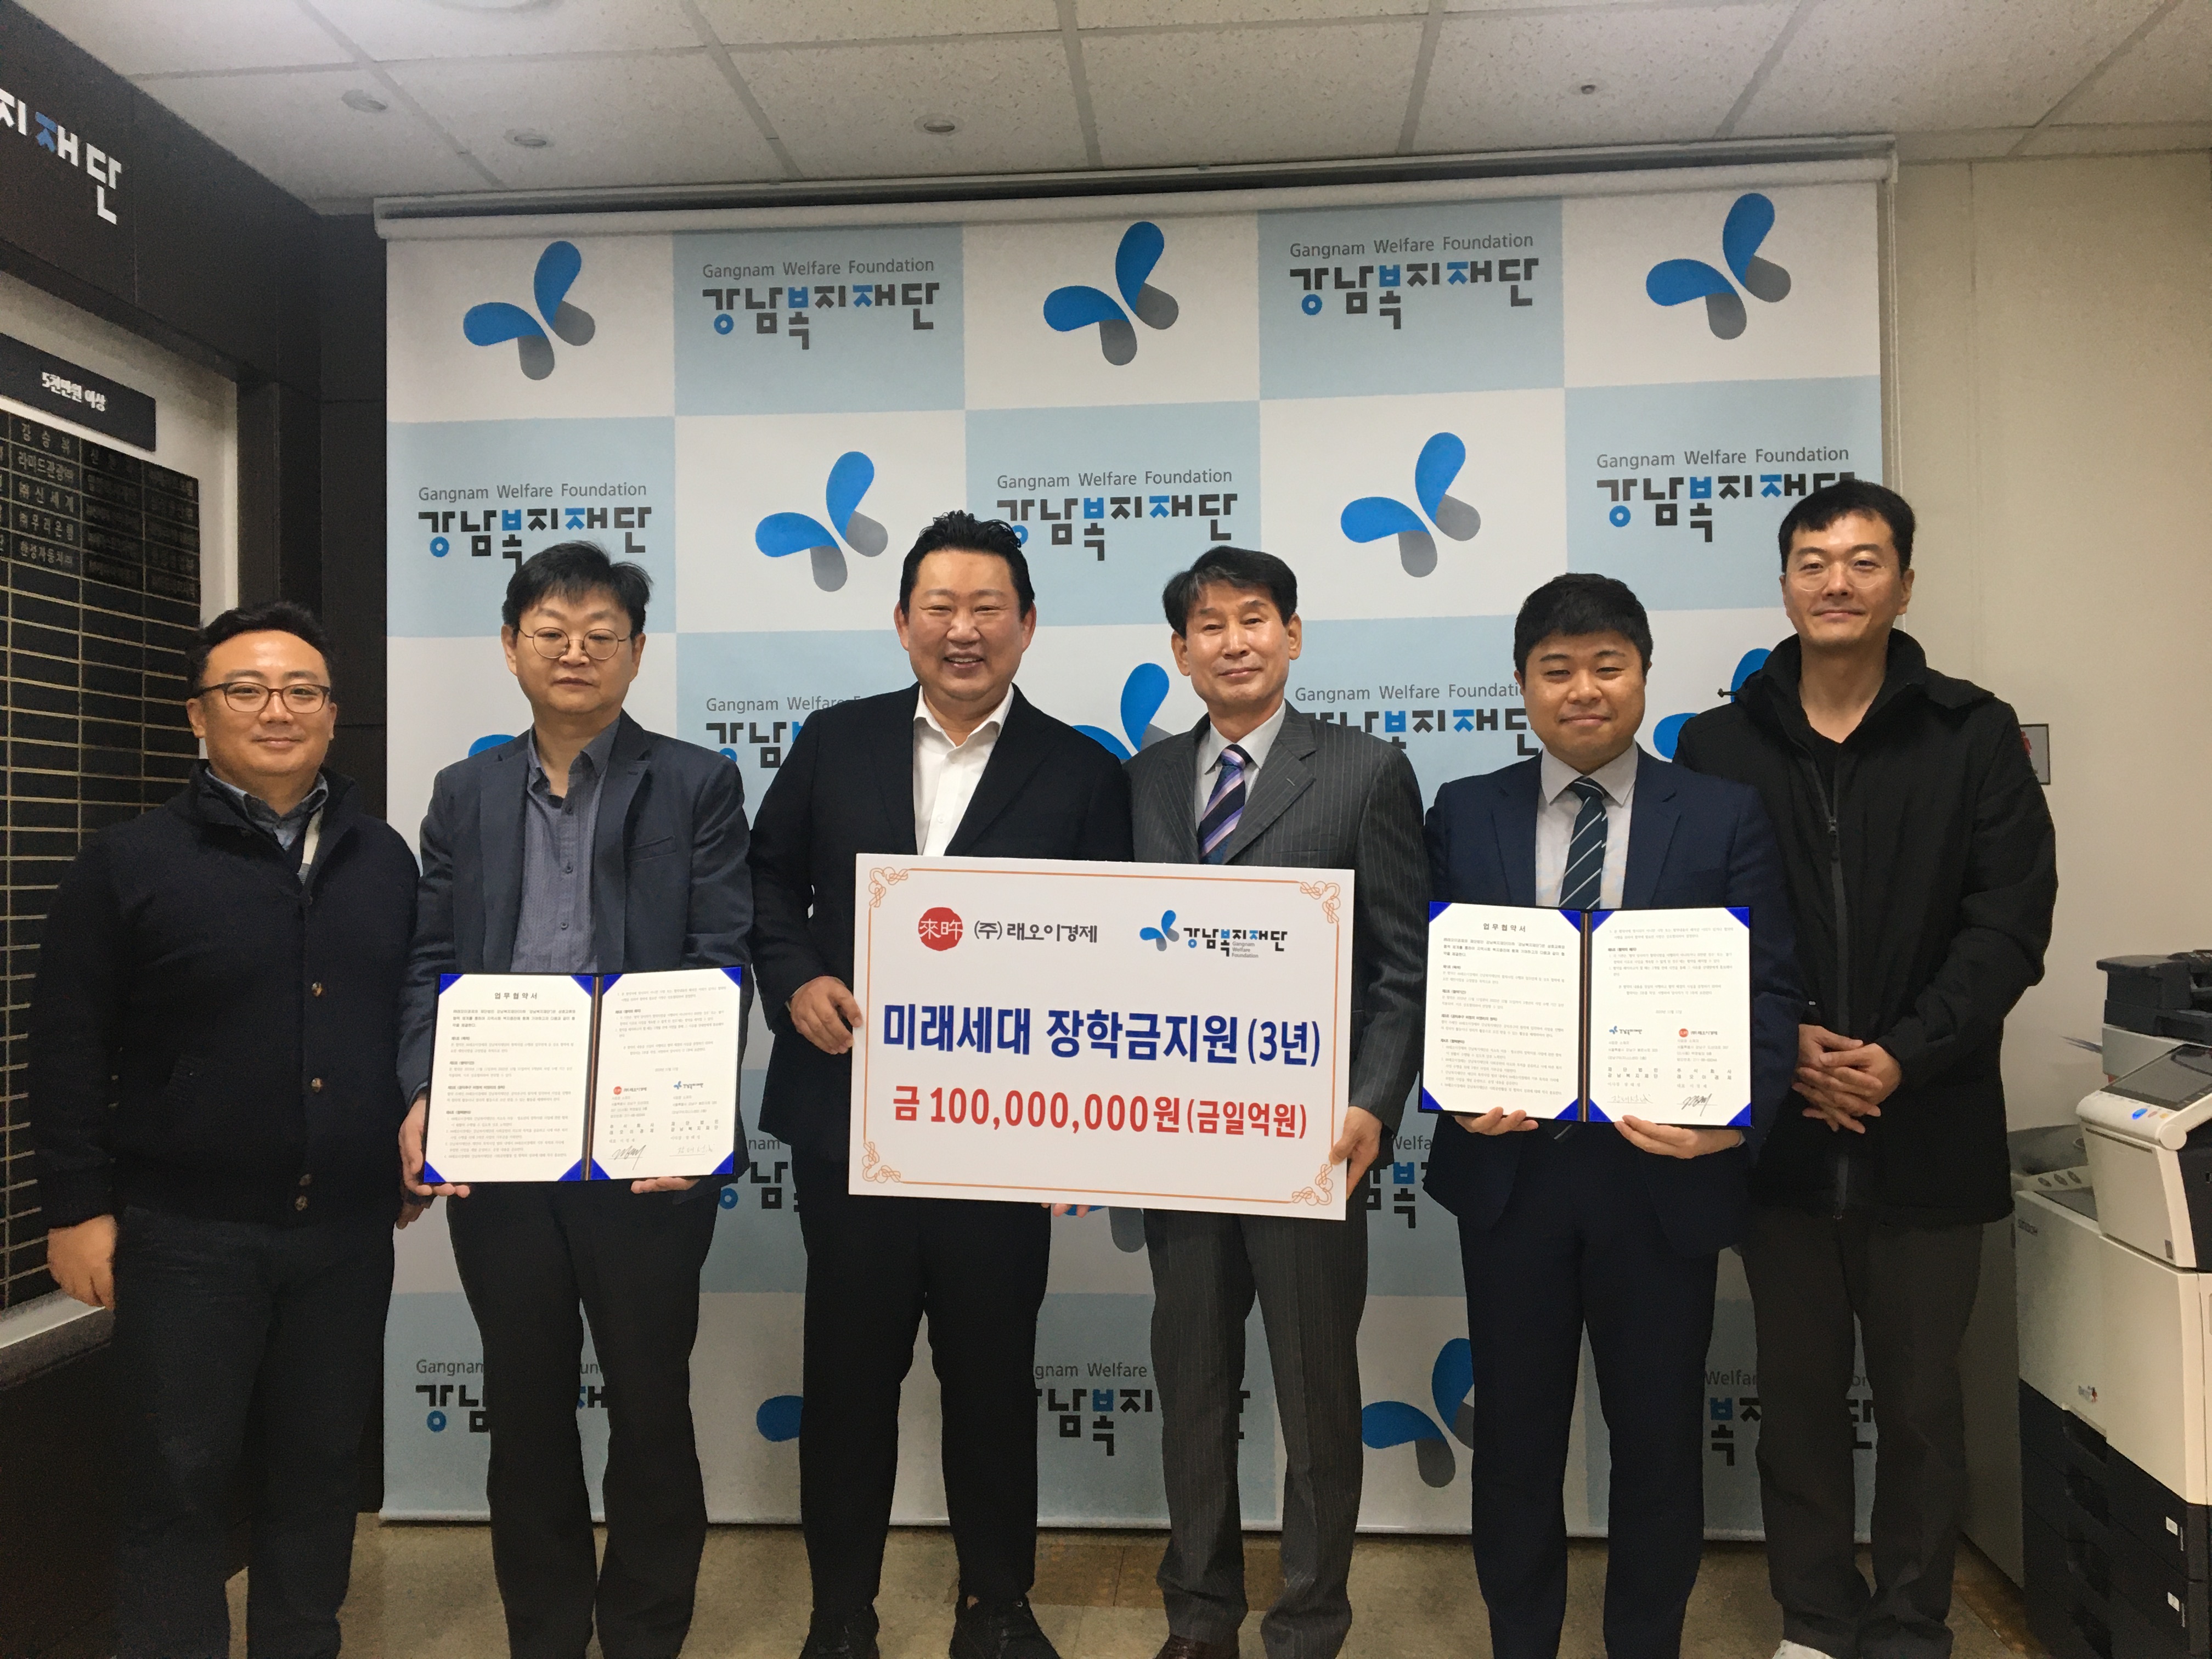 강남복지재단 ㈜래오 이경제와                     ‘미래세대 장학지원’업무 협약체결